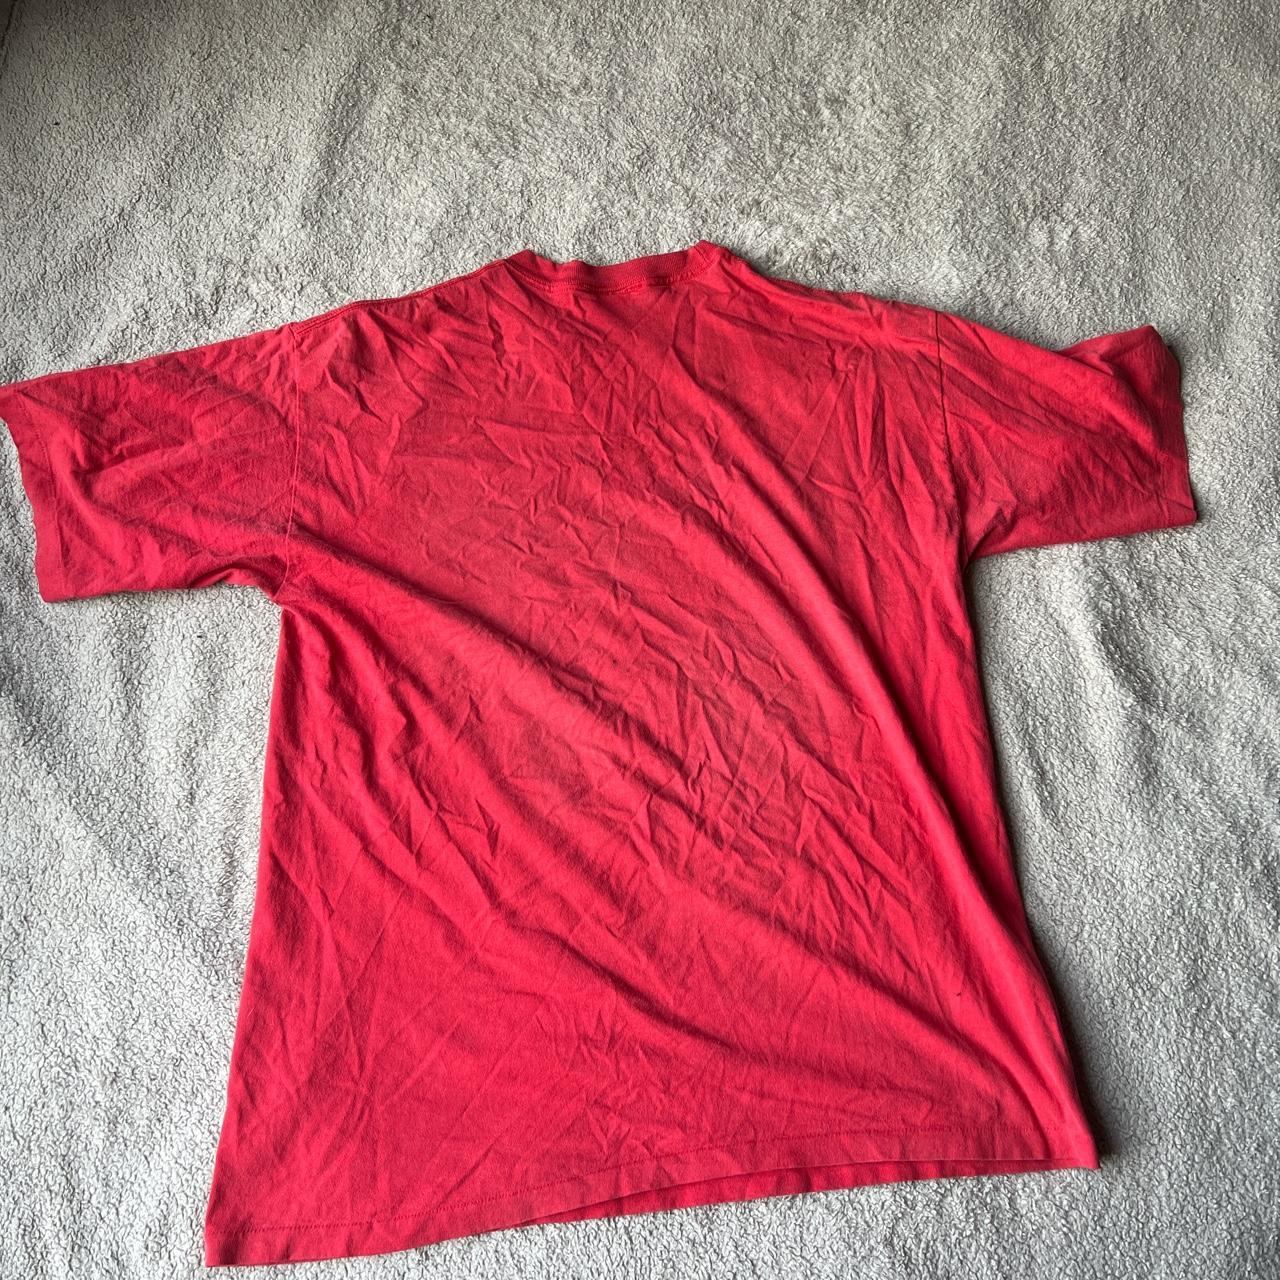 Vintage Detroit Red Wings Starter t-shirt, I'm 99% - Depop